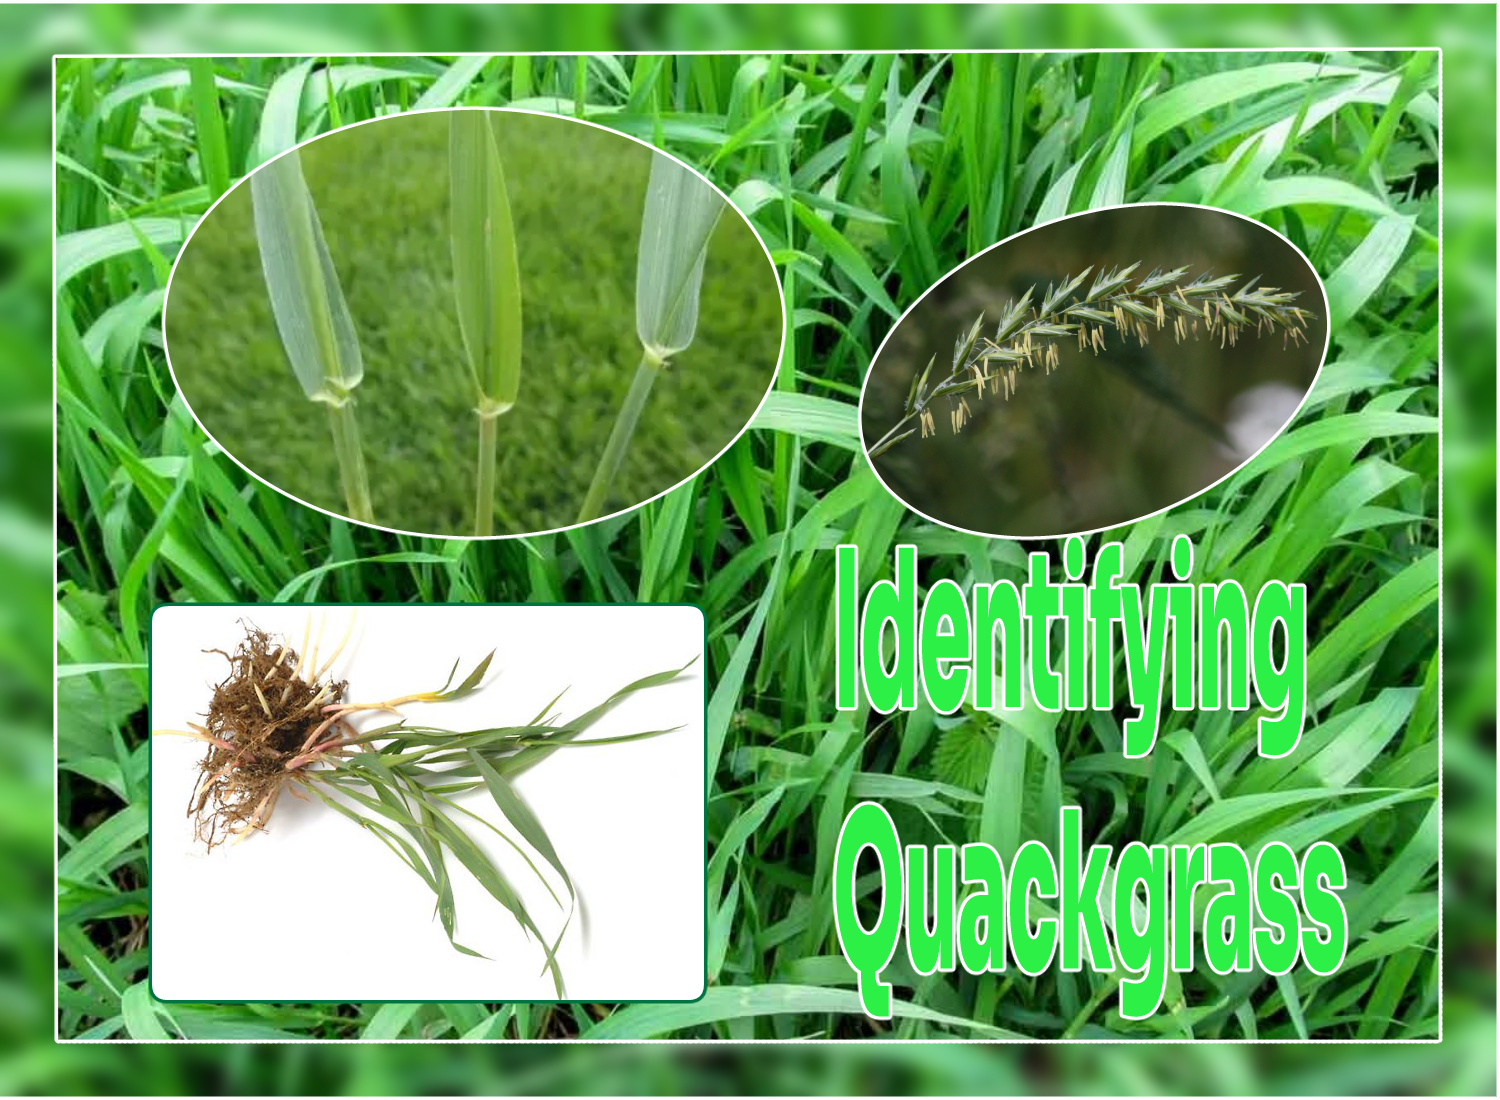 Quackgrass Characteristics